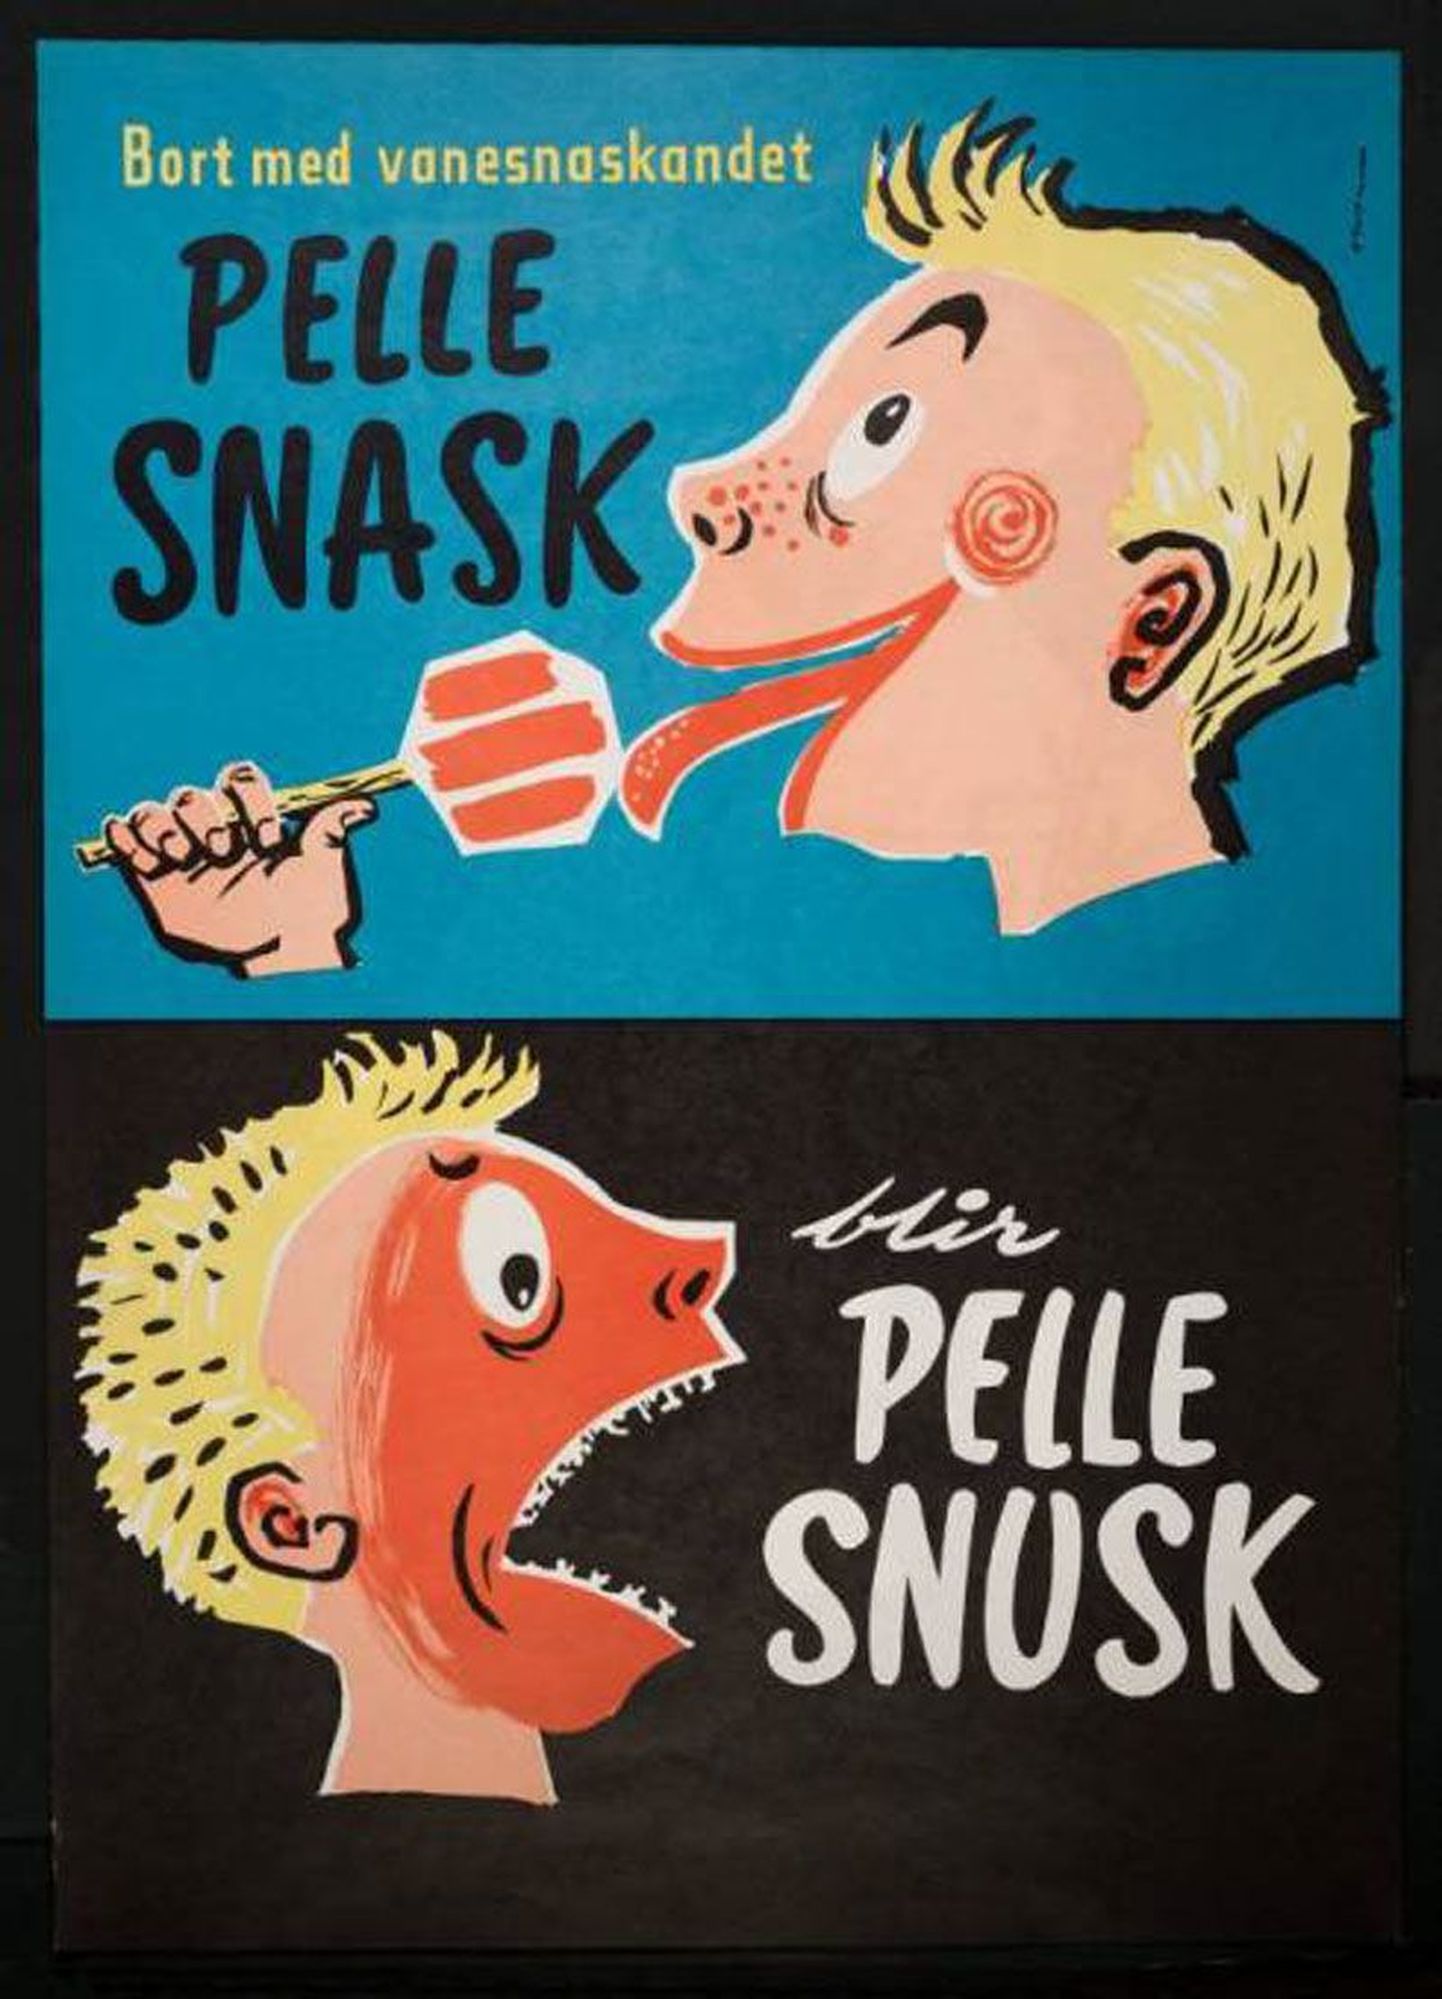 1950ndatel manitseti lapsi magusa söömisel piiri pidama, sest maiast Pellest saab muidu räpane Pelle.